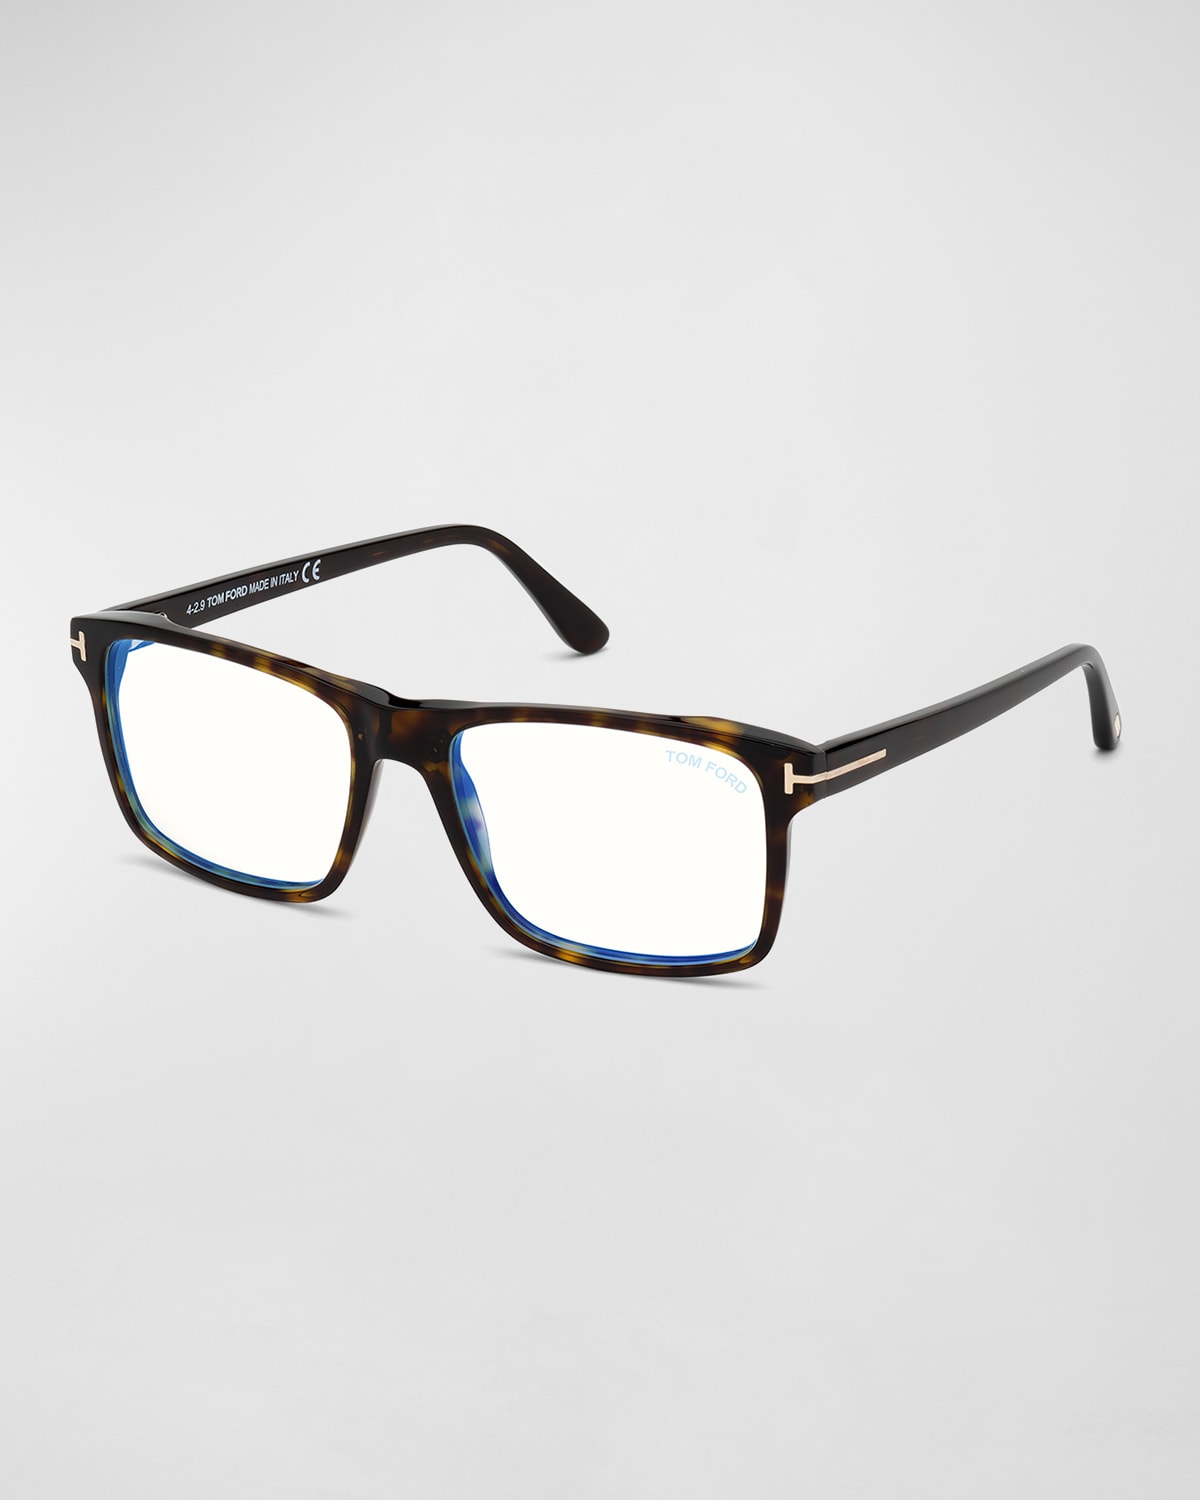 TOM FORD Men's FT5665-BM54 Blue Light Blocking Navigator Optical Glasses